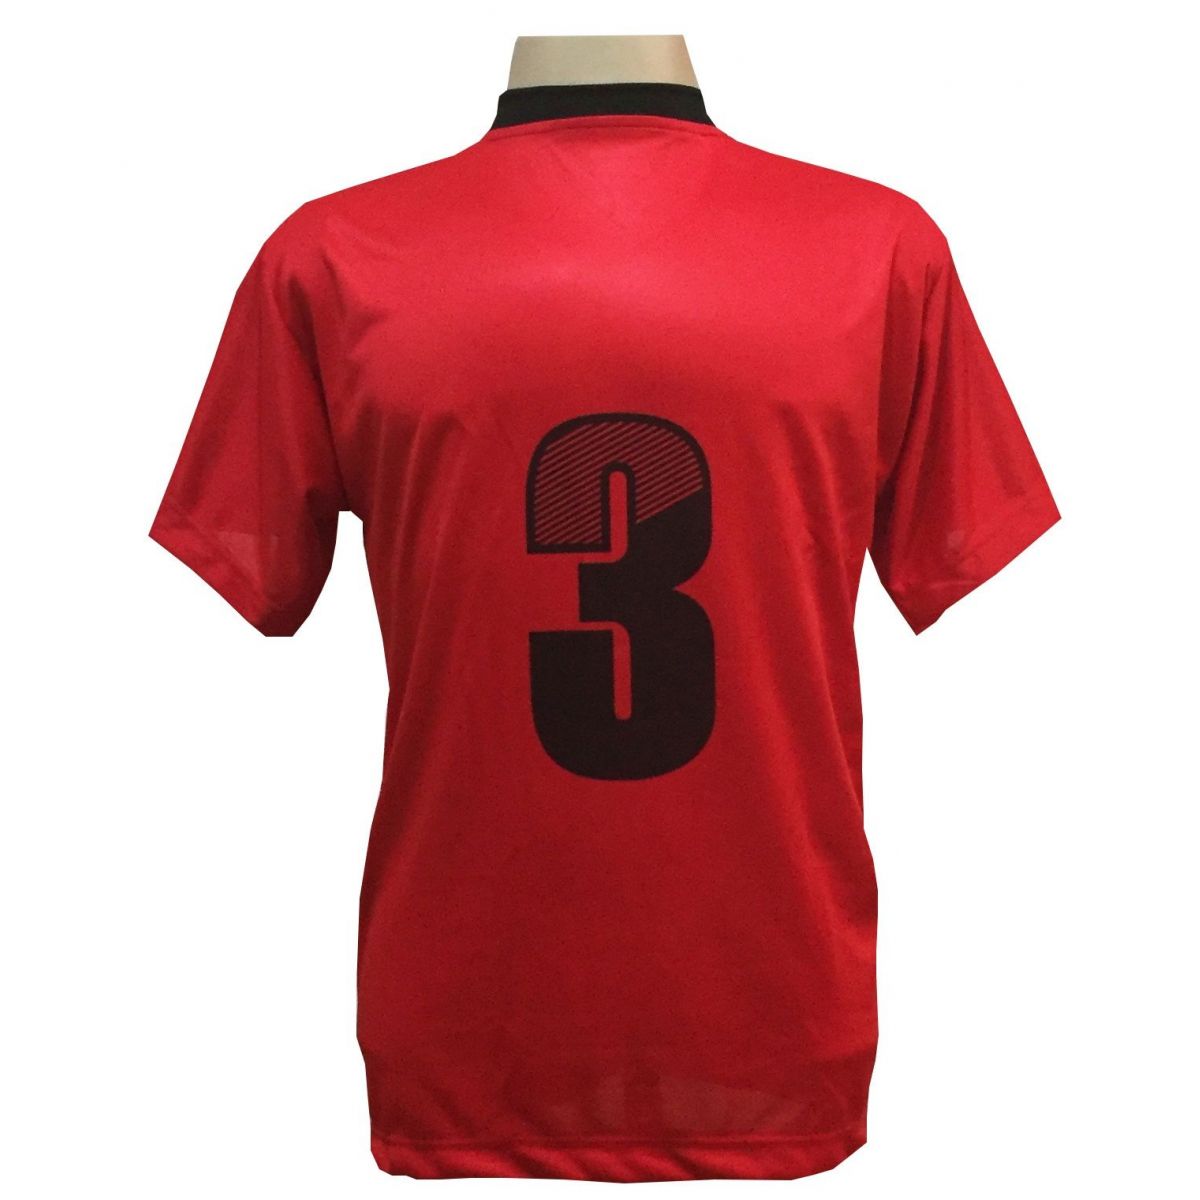 Uniforme Esportivo com 18 camisas modelo modelo Roma Vermelho/Preto + 18 calções modelo Copa + 1 Goleiro + Brindes